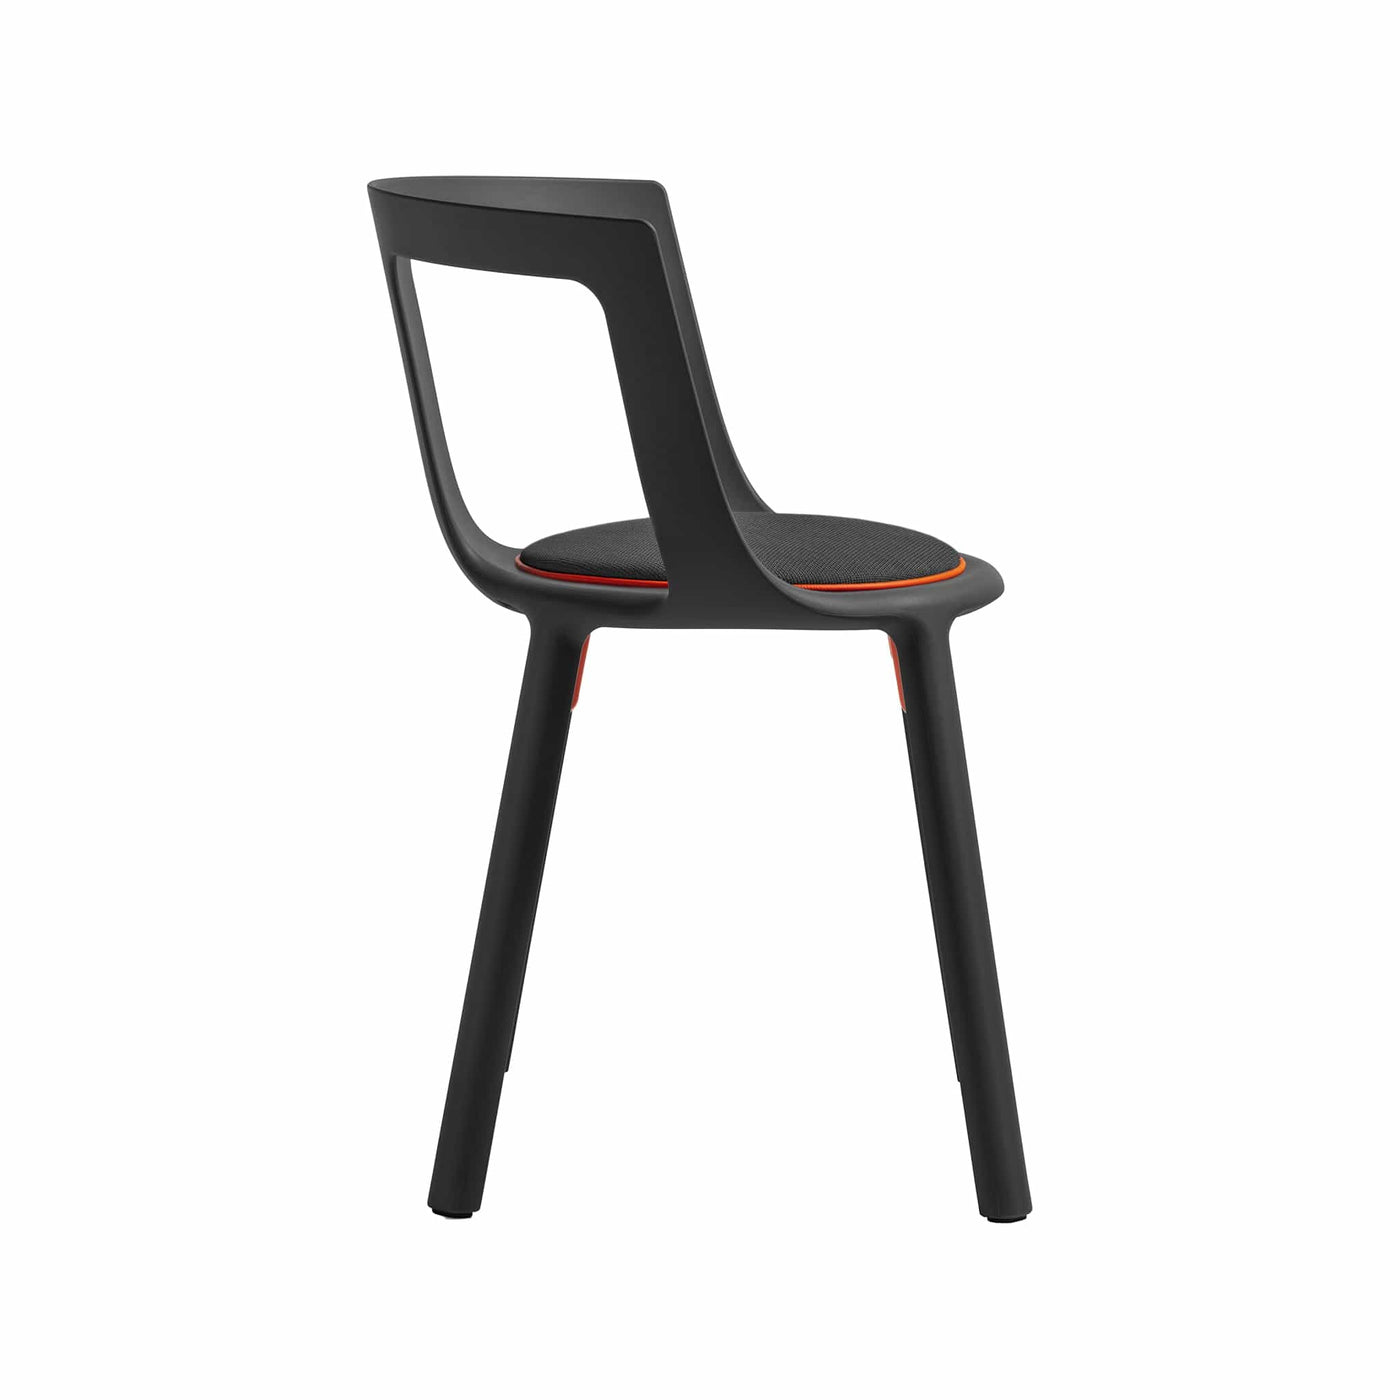 La chaise FLA de TOOU offre un mariage harmonieux entre courbes dynamiques et lignes nettes, ajoutant une esthétique attrayante et polyvalente à votre espace.